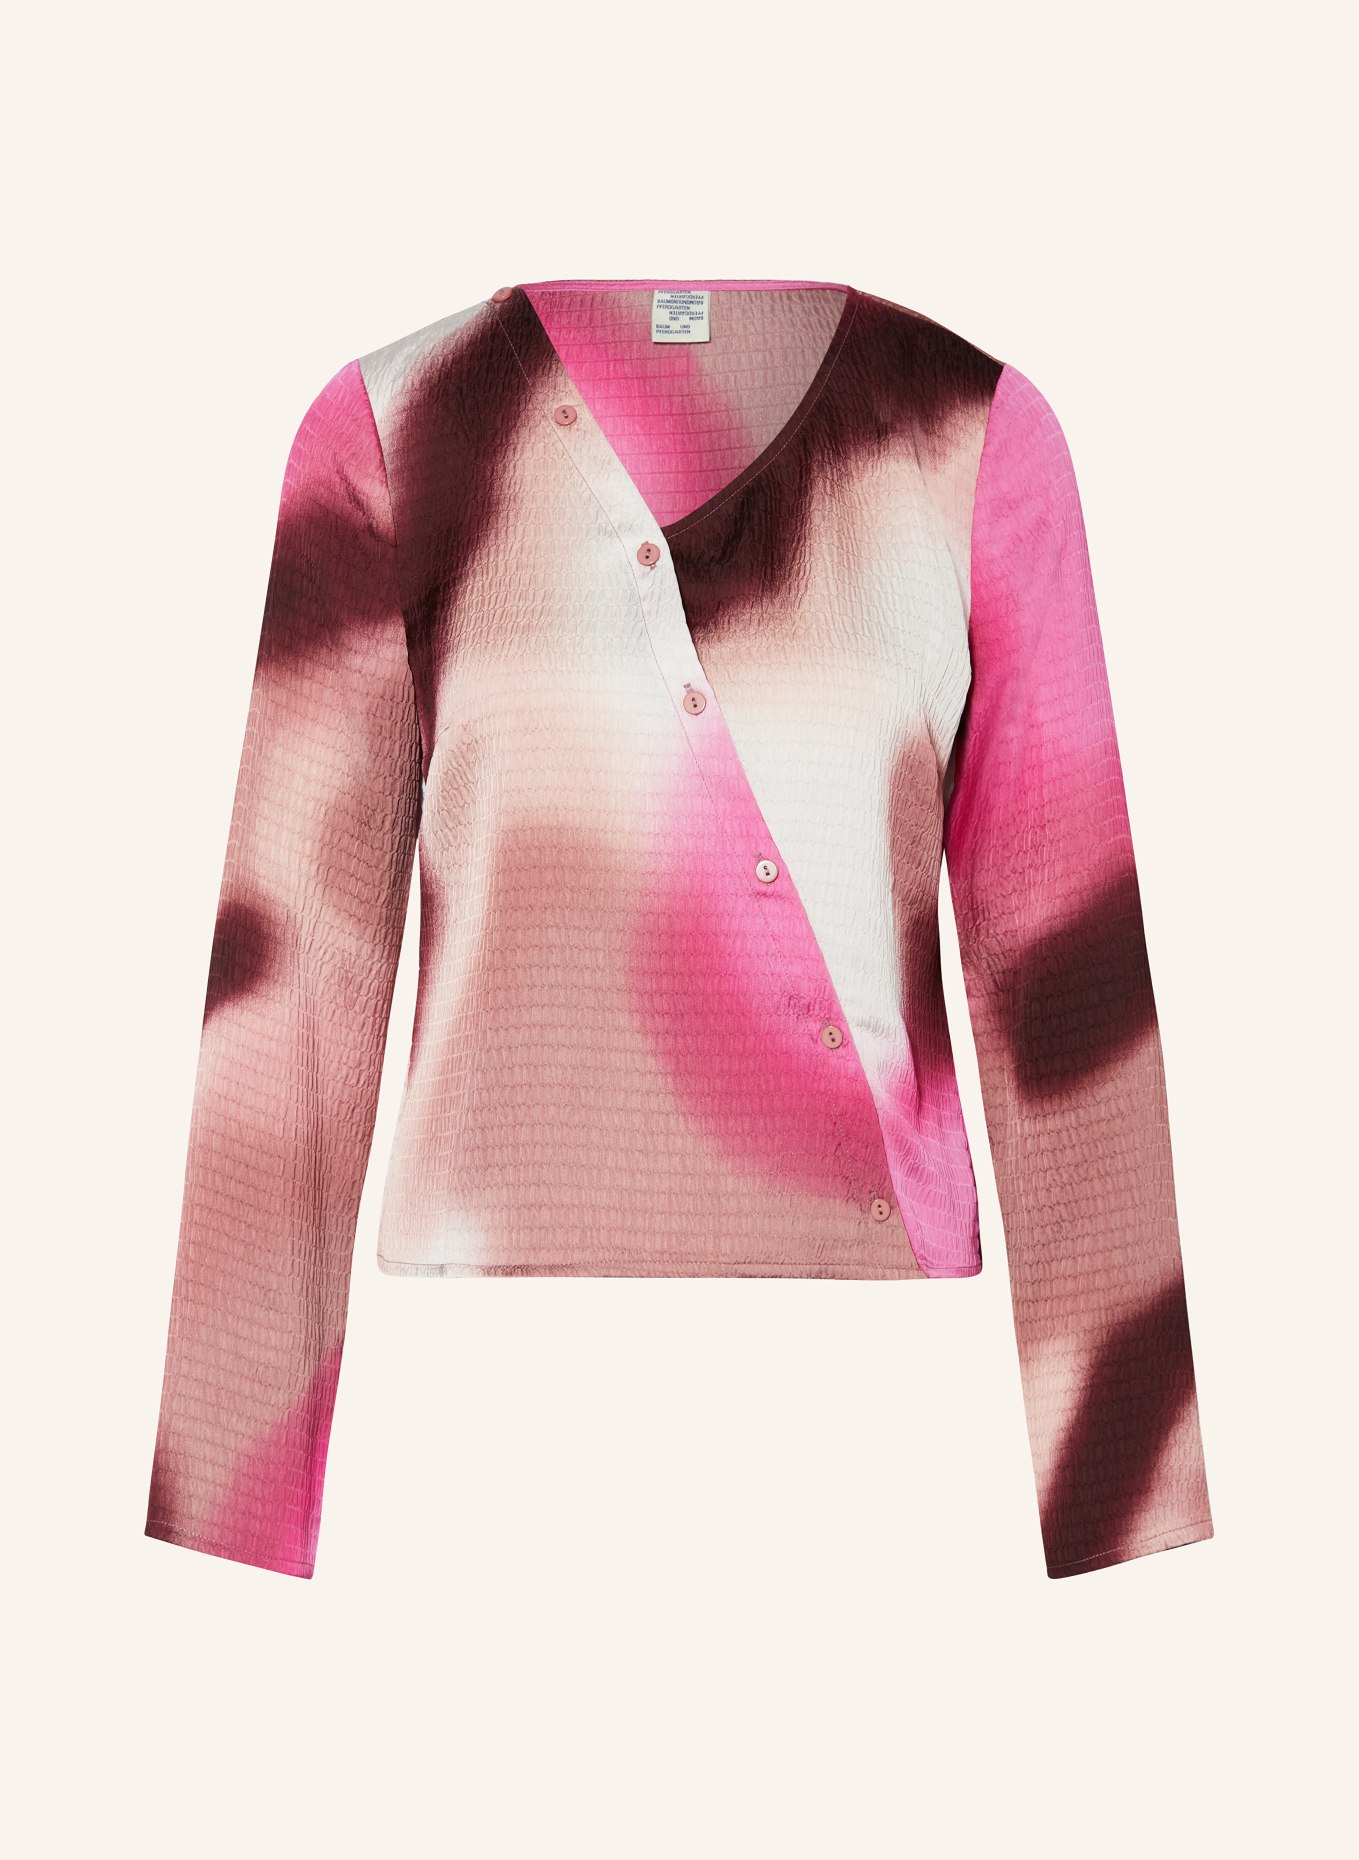 BAUM UND PFERDGARTEN Bluse MAIA, Farbe: DUNKELROT/ HELLROSA/ PINK (Bild 1)